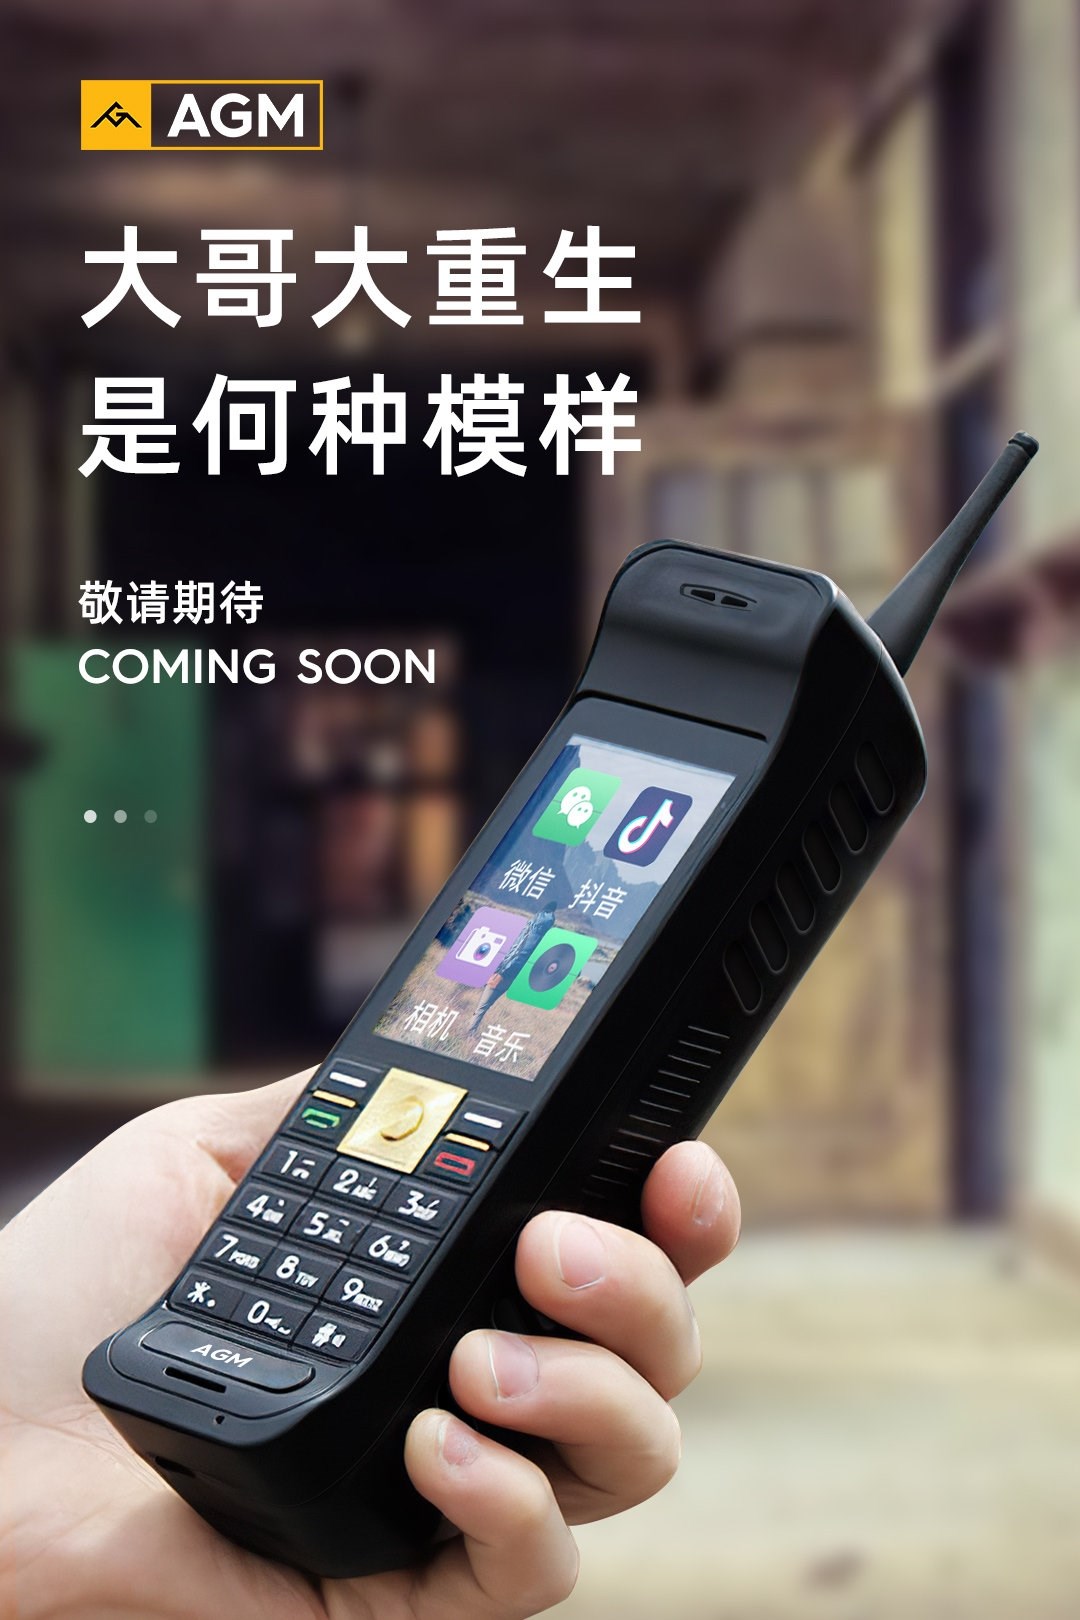 Çinli şirket AGM, 'tuğla' ebatlarındaki akıllı telefonunu duyurdu